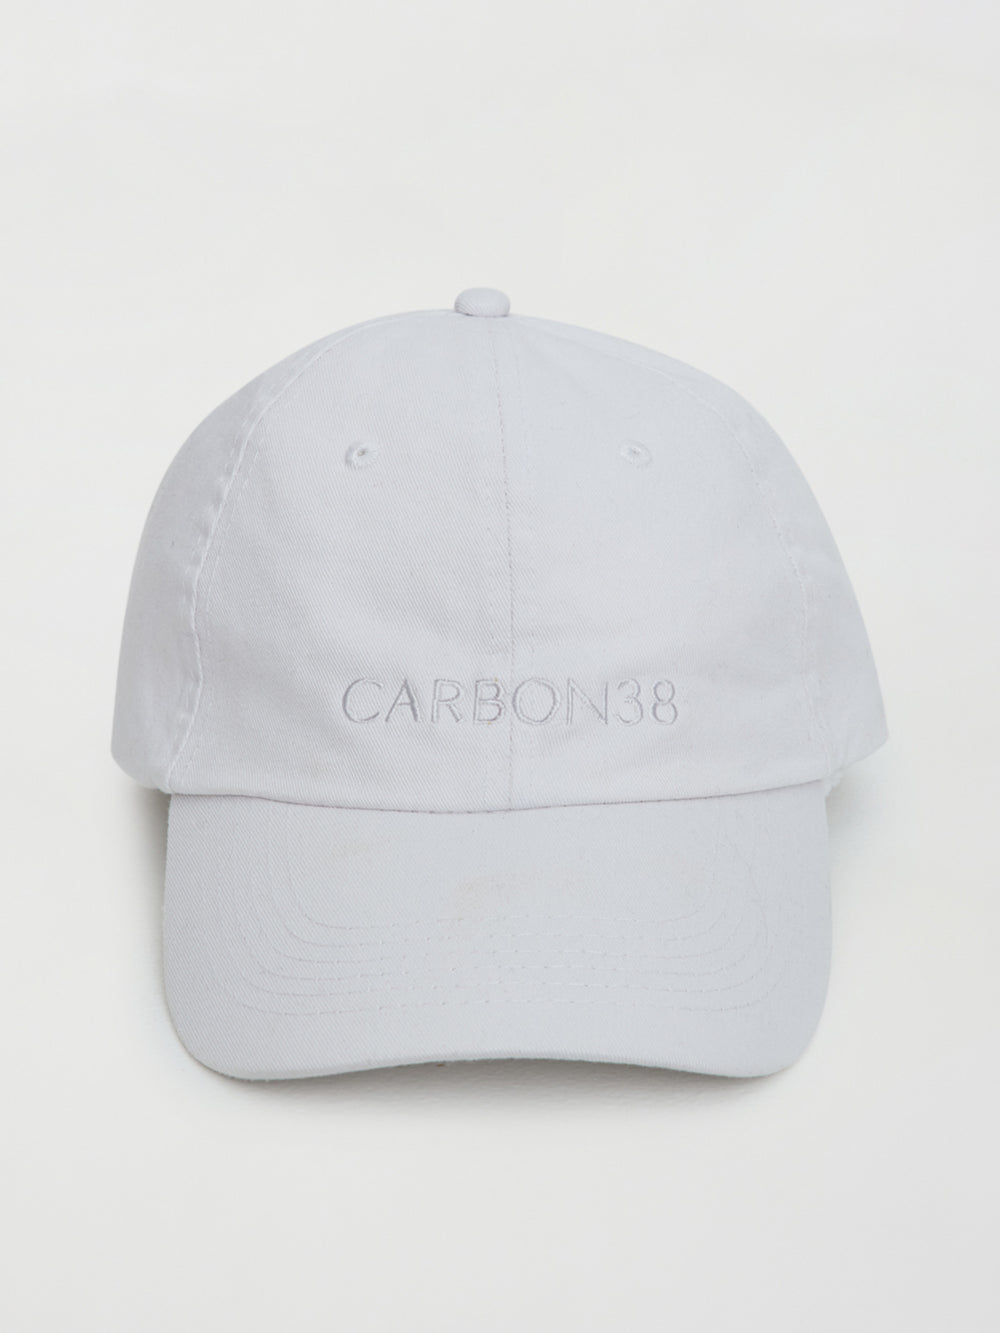 CARBON38 HAT - WHITE